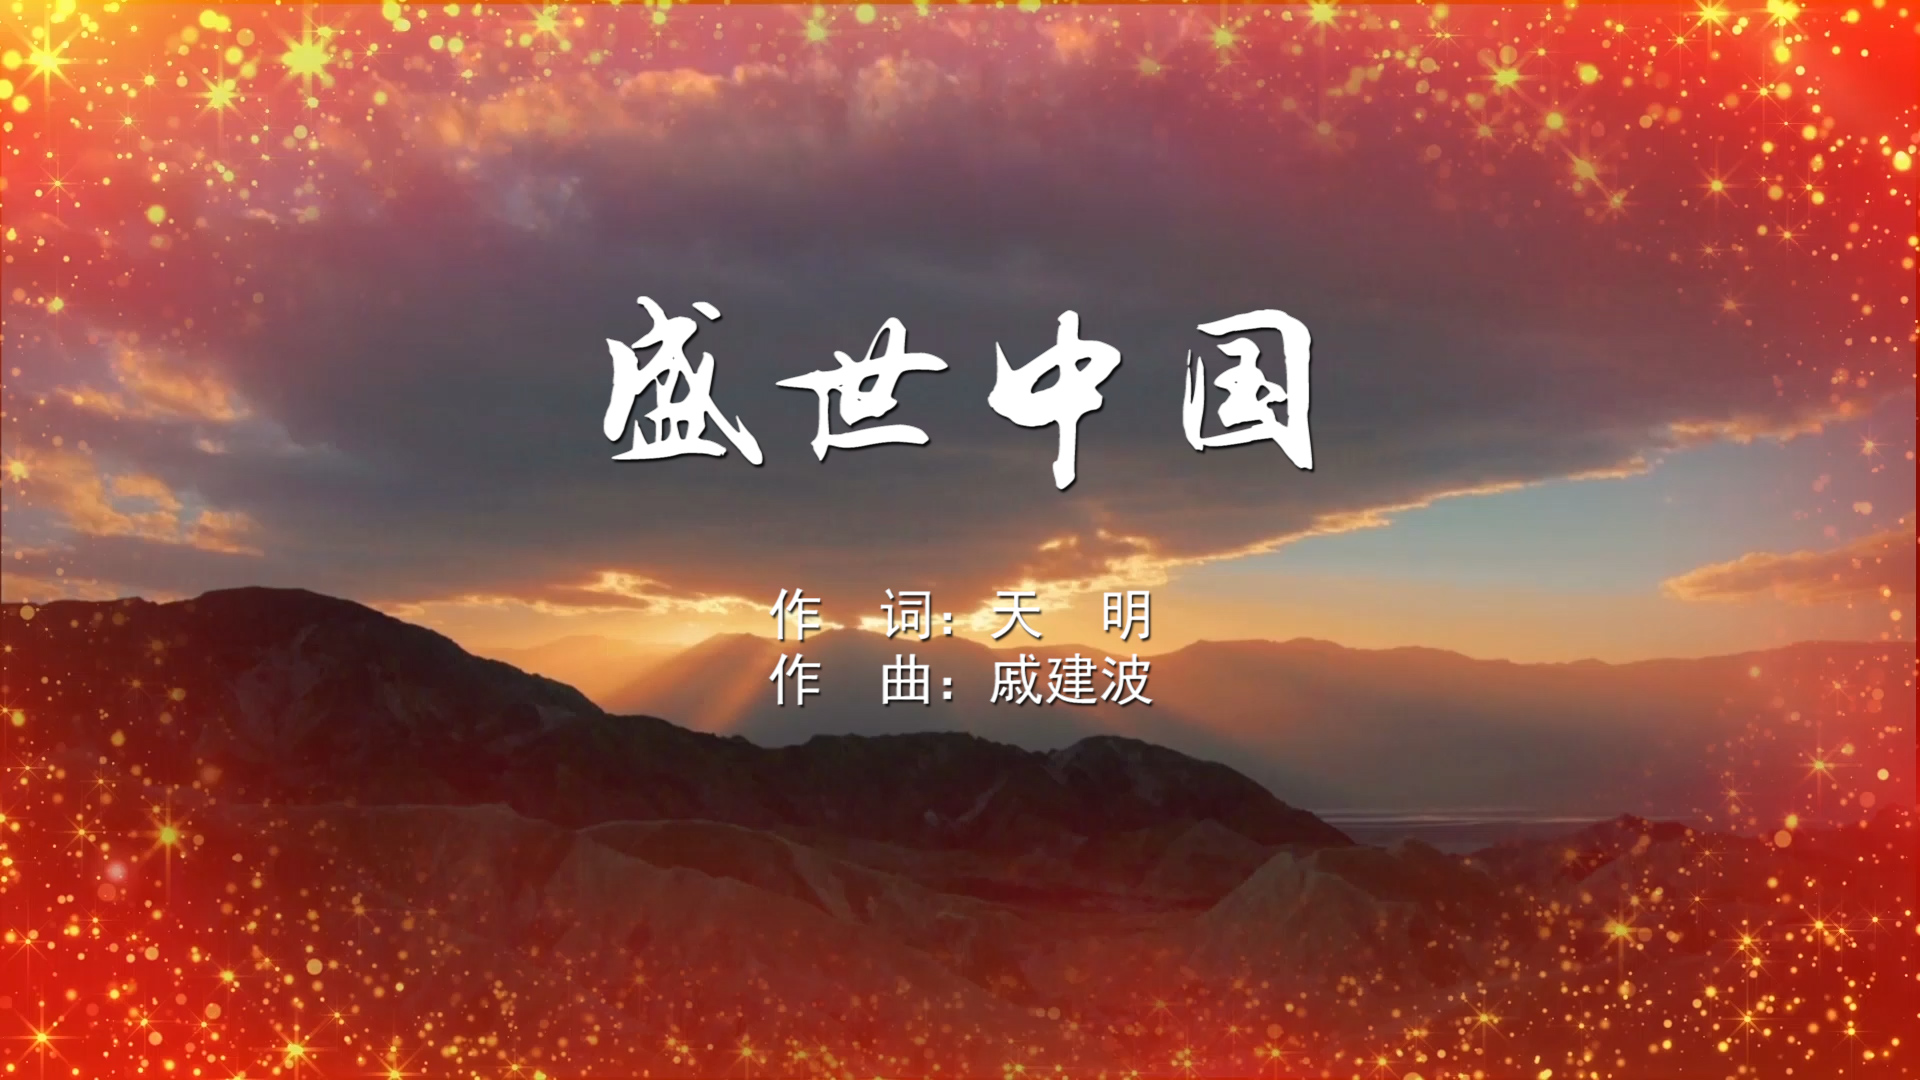 盛世中国 MV字幕配乐伴奏舞台演出LED背景大屏幕